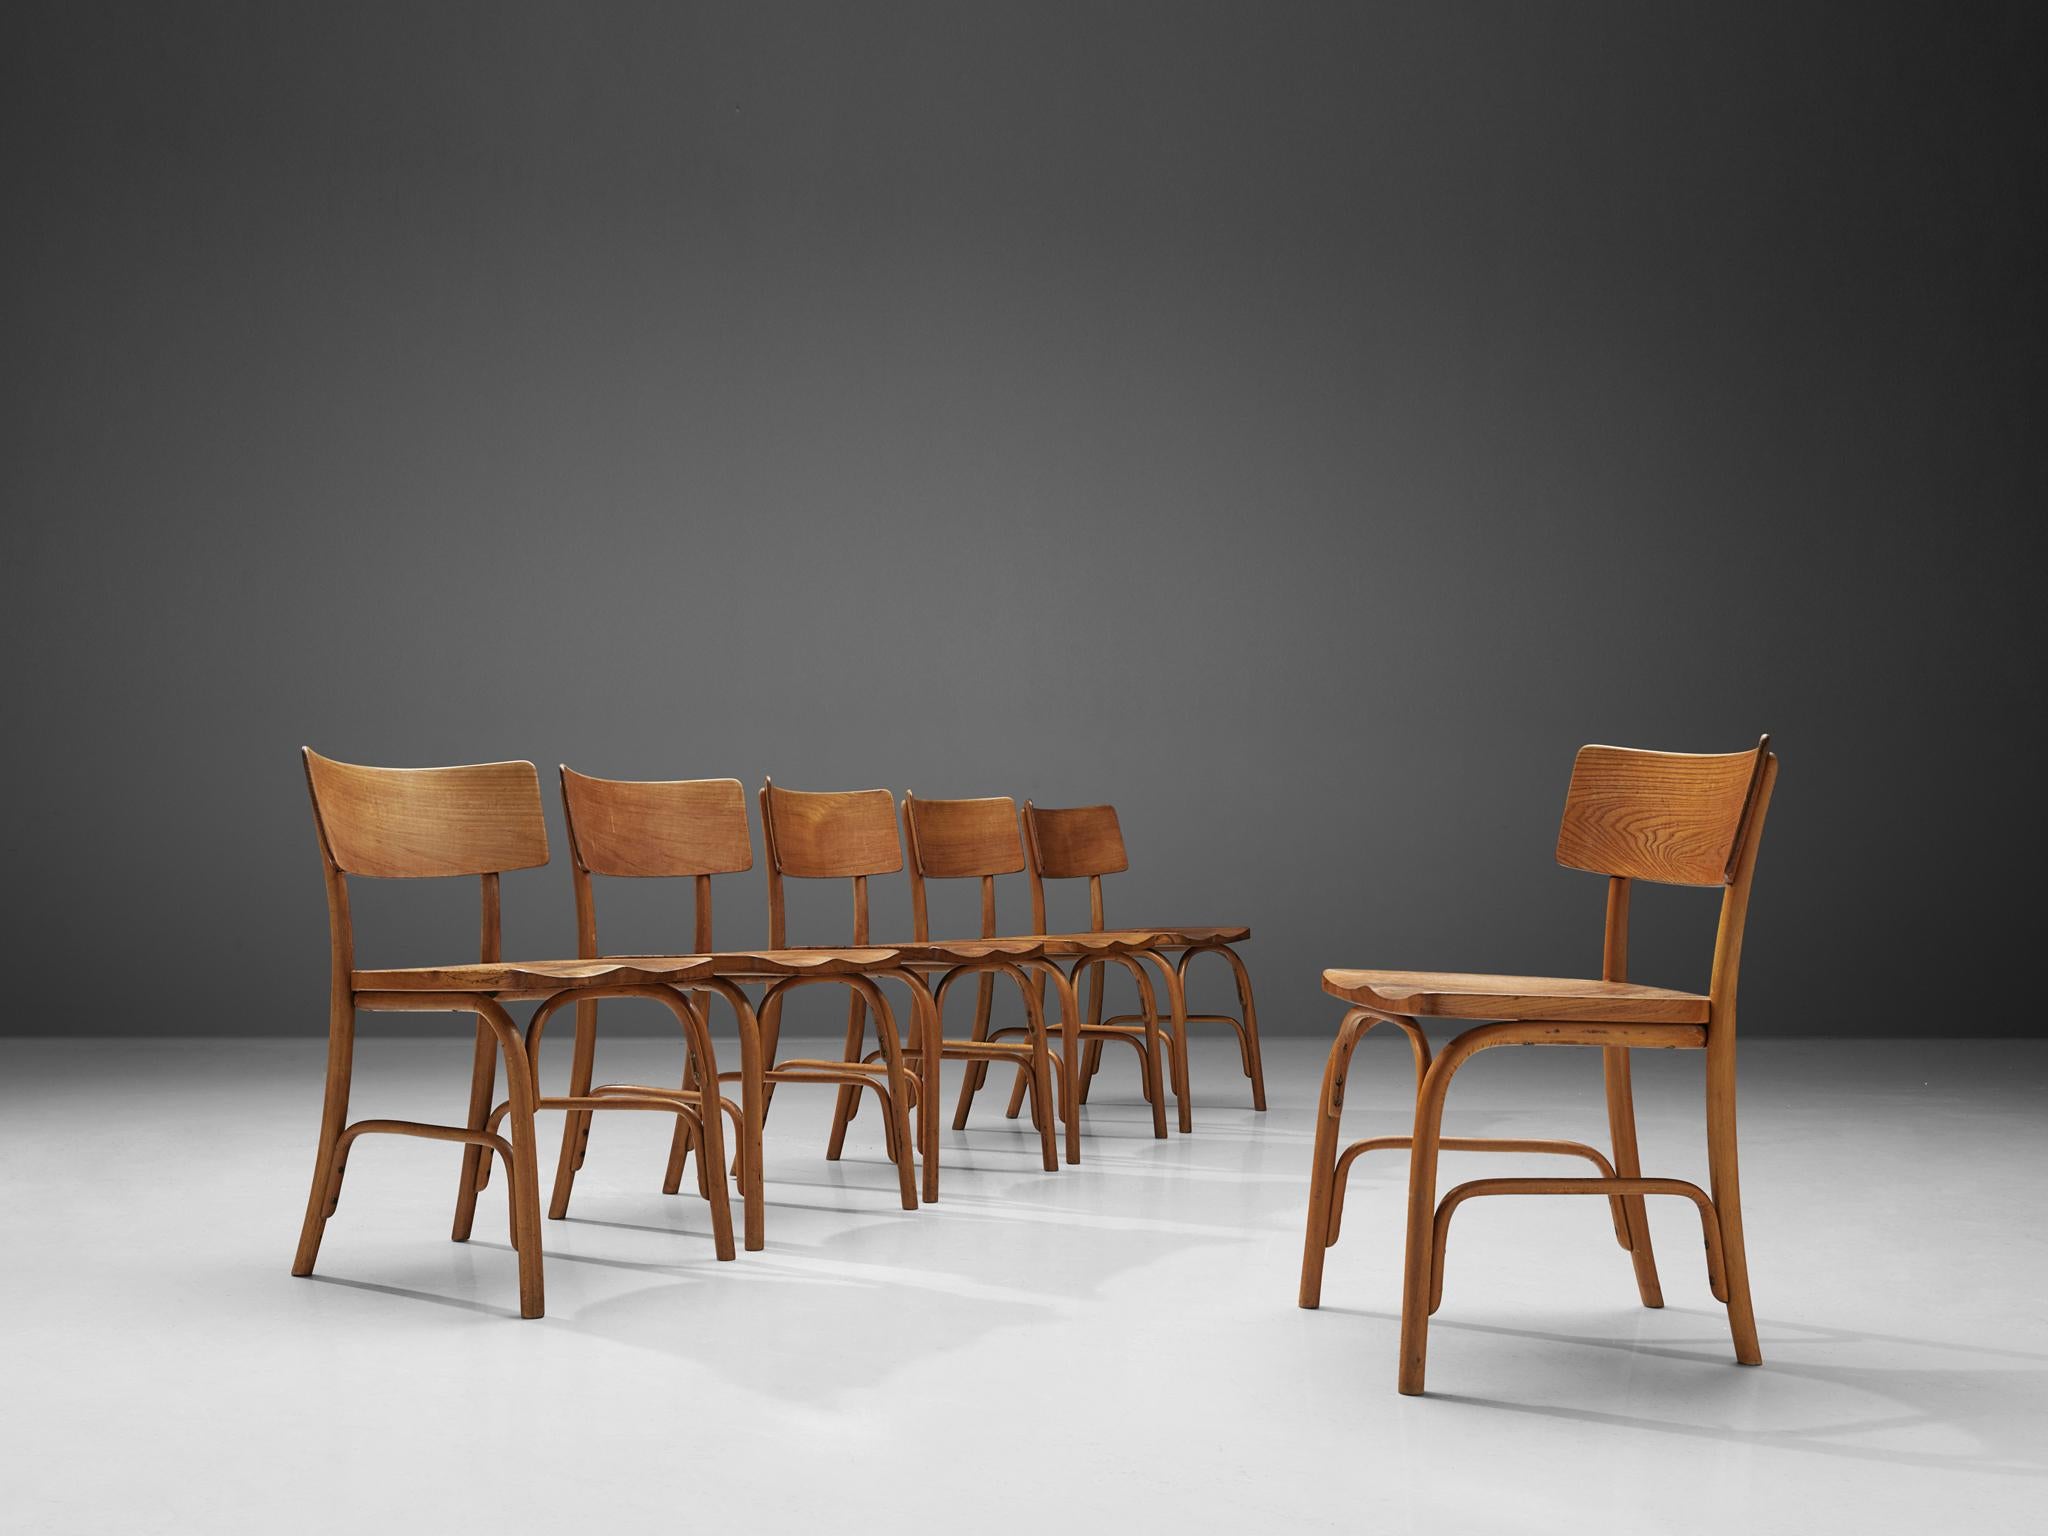 Frits Schlegel pour Fritz Hansen, ensemble de six chaises 'Husum', orme, hêtre. Danemark, 1930

Le designer danois Frits Schlegel a créé la chaise 